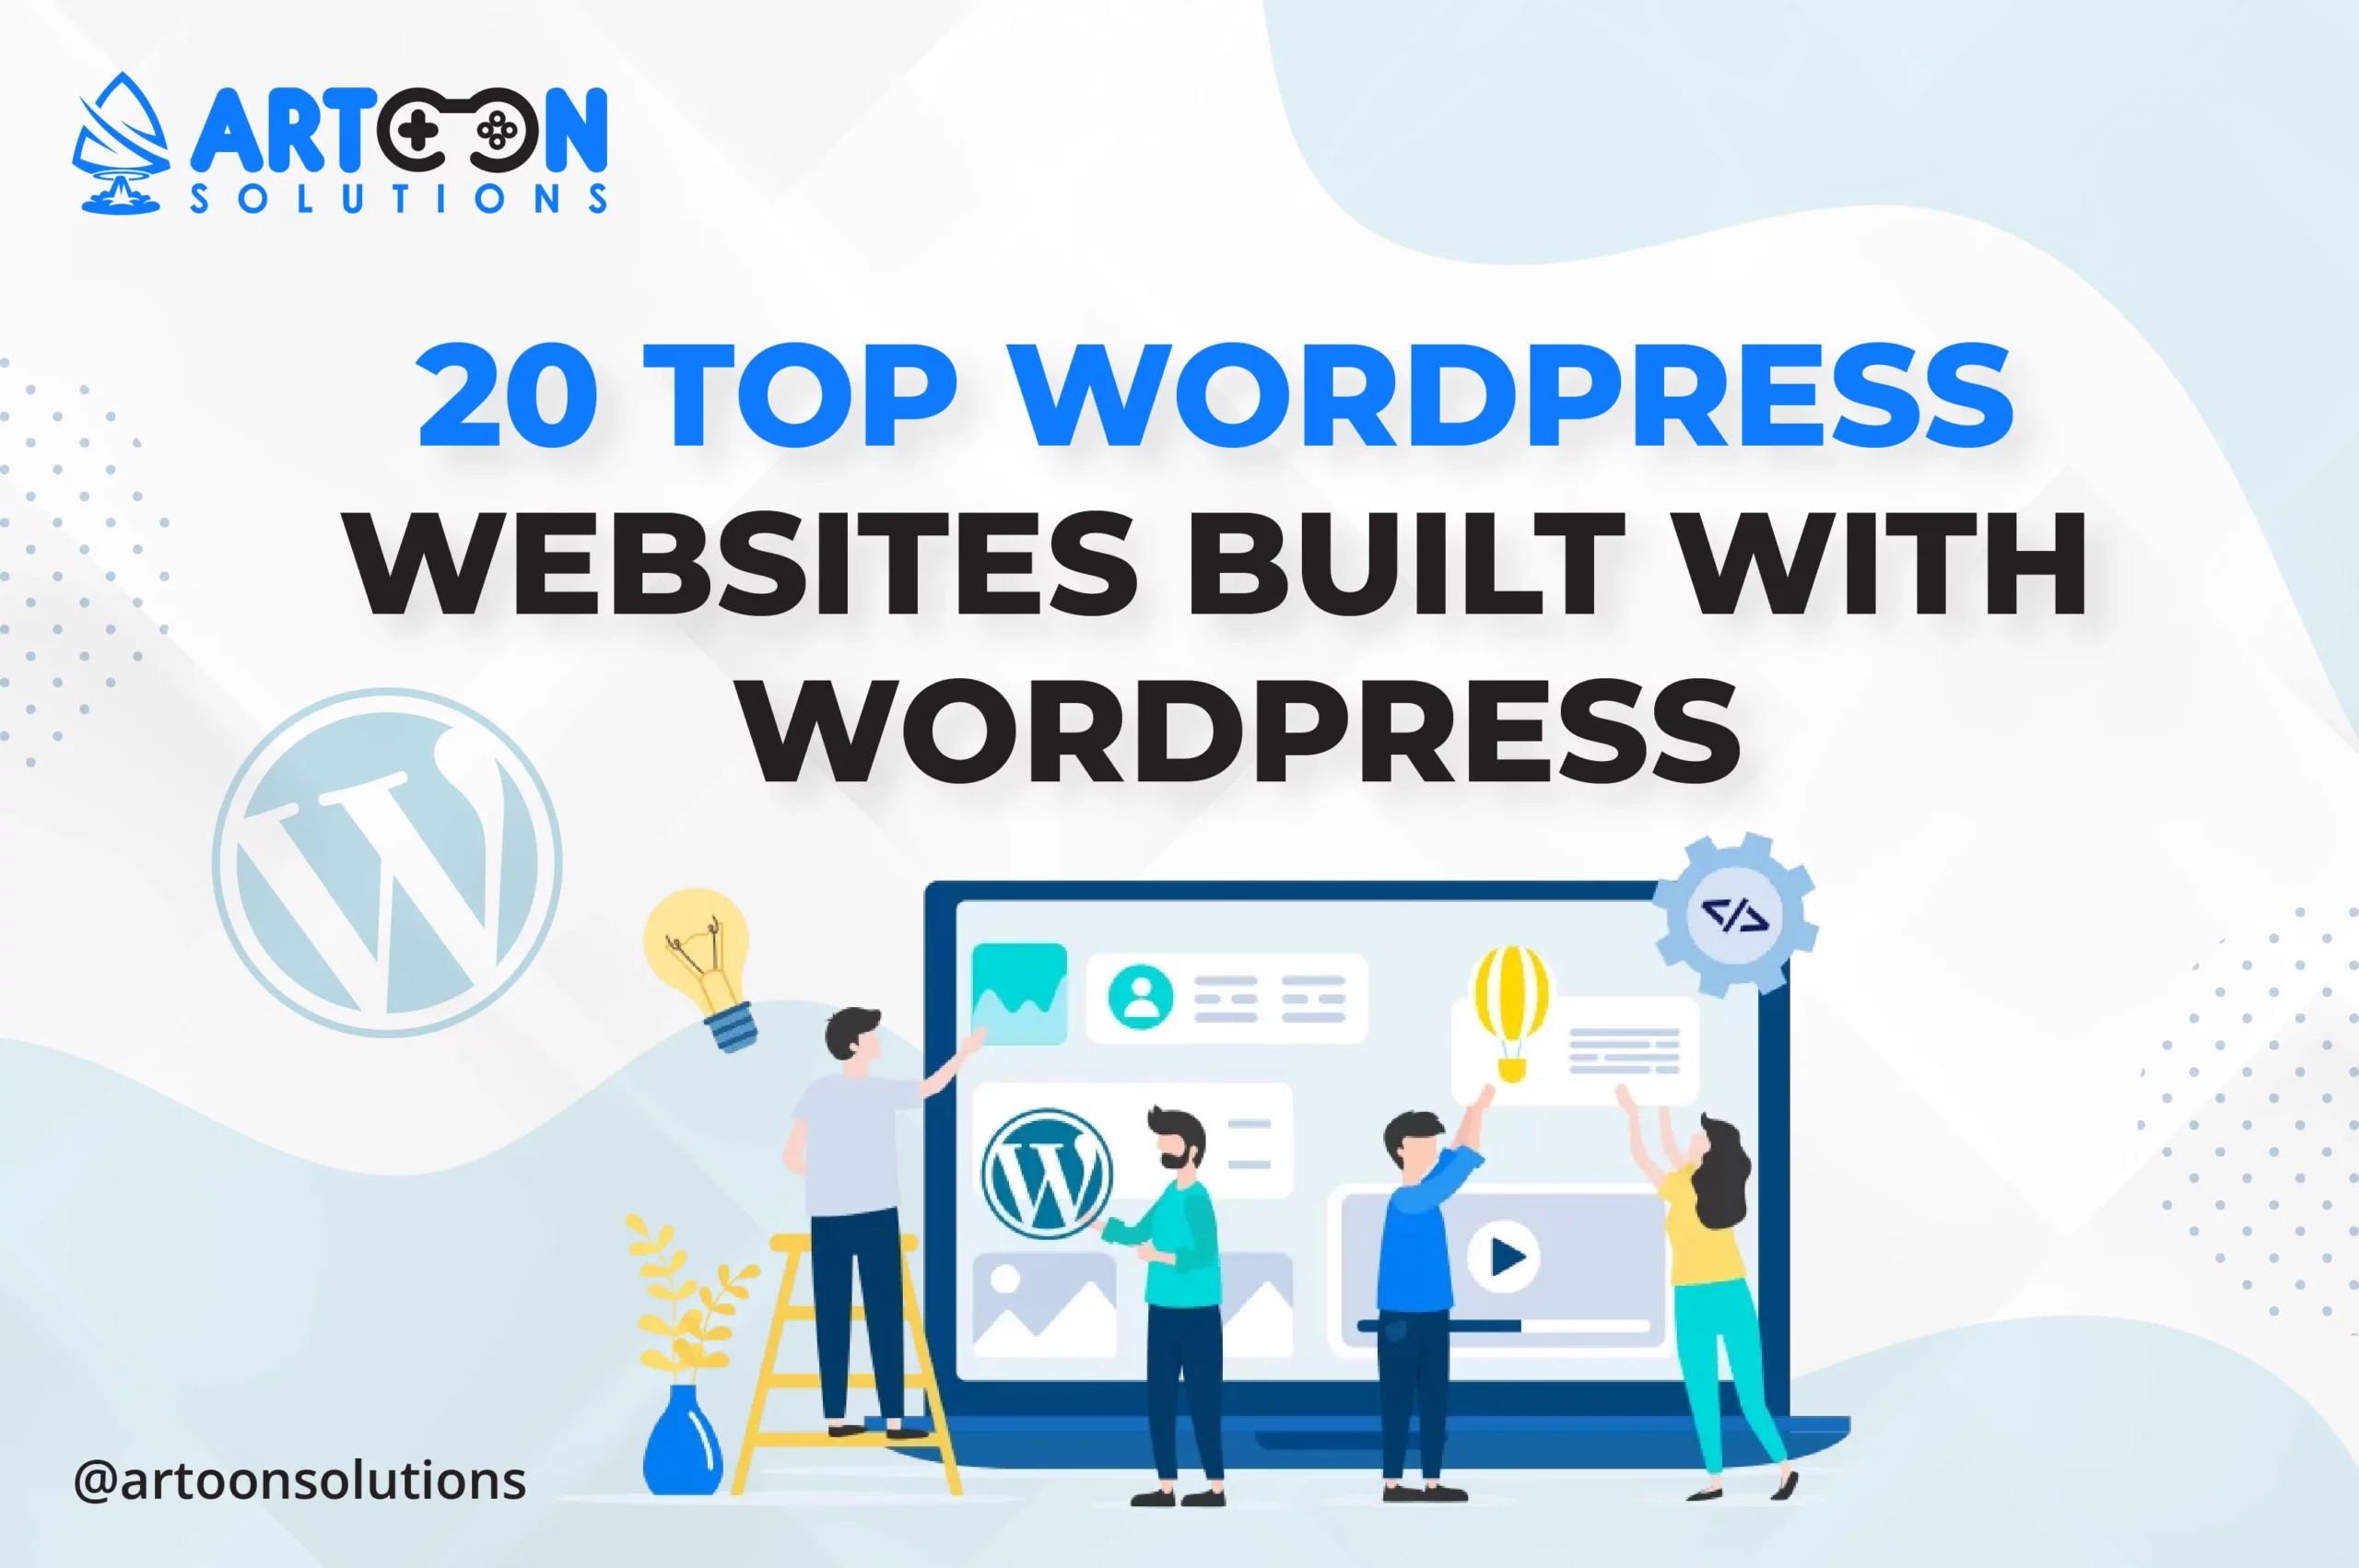 20 Top WordPress Websites Built with WordPress